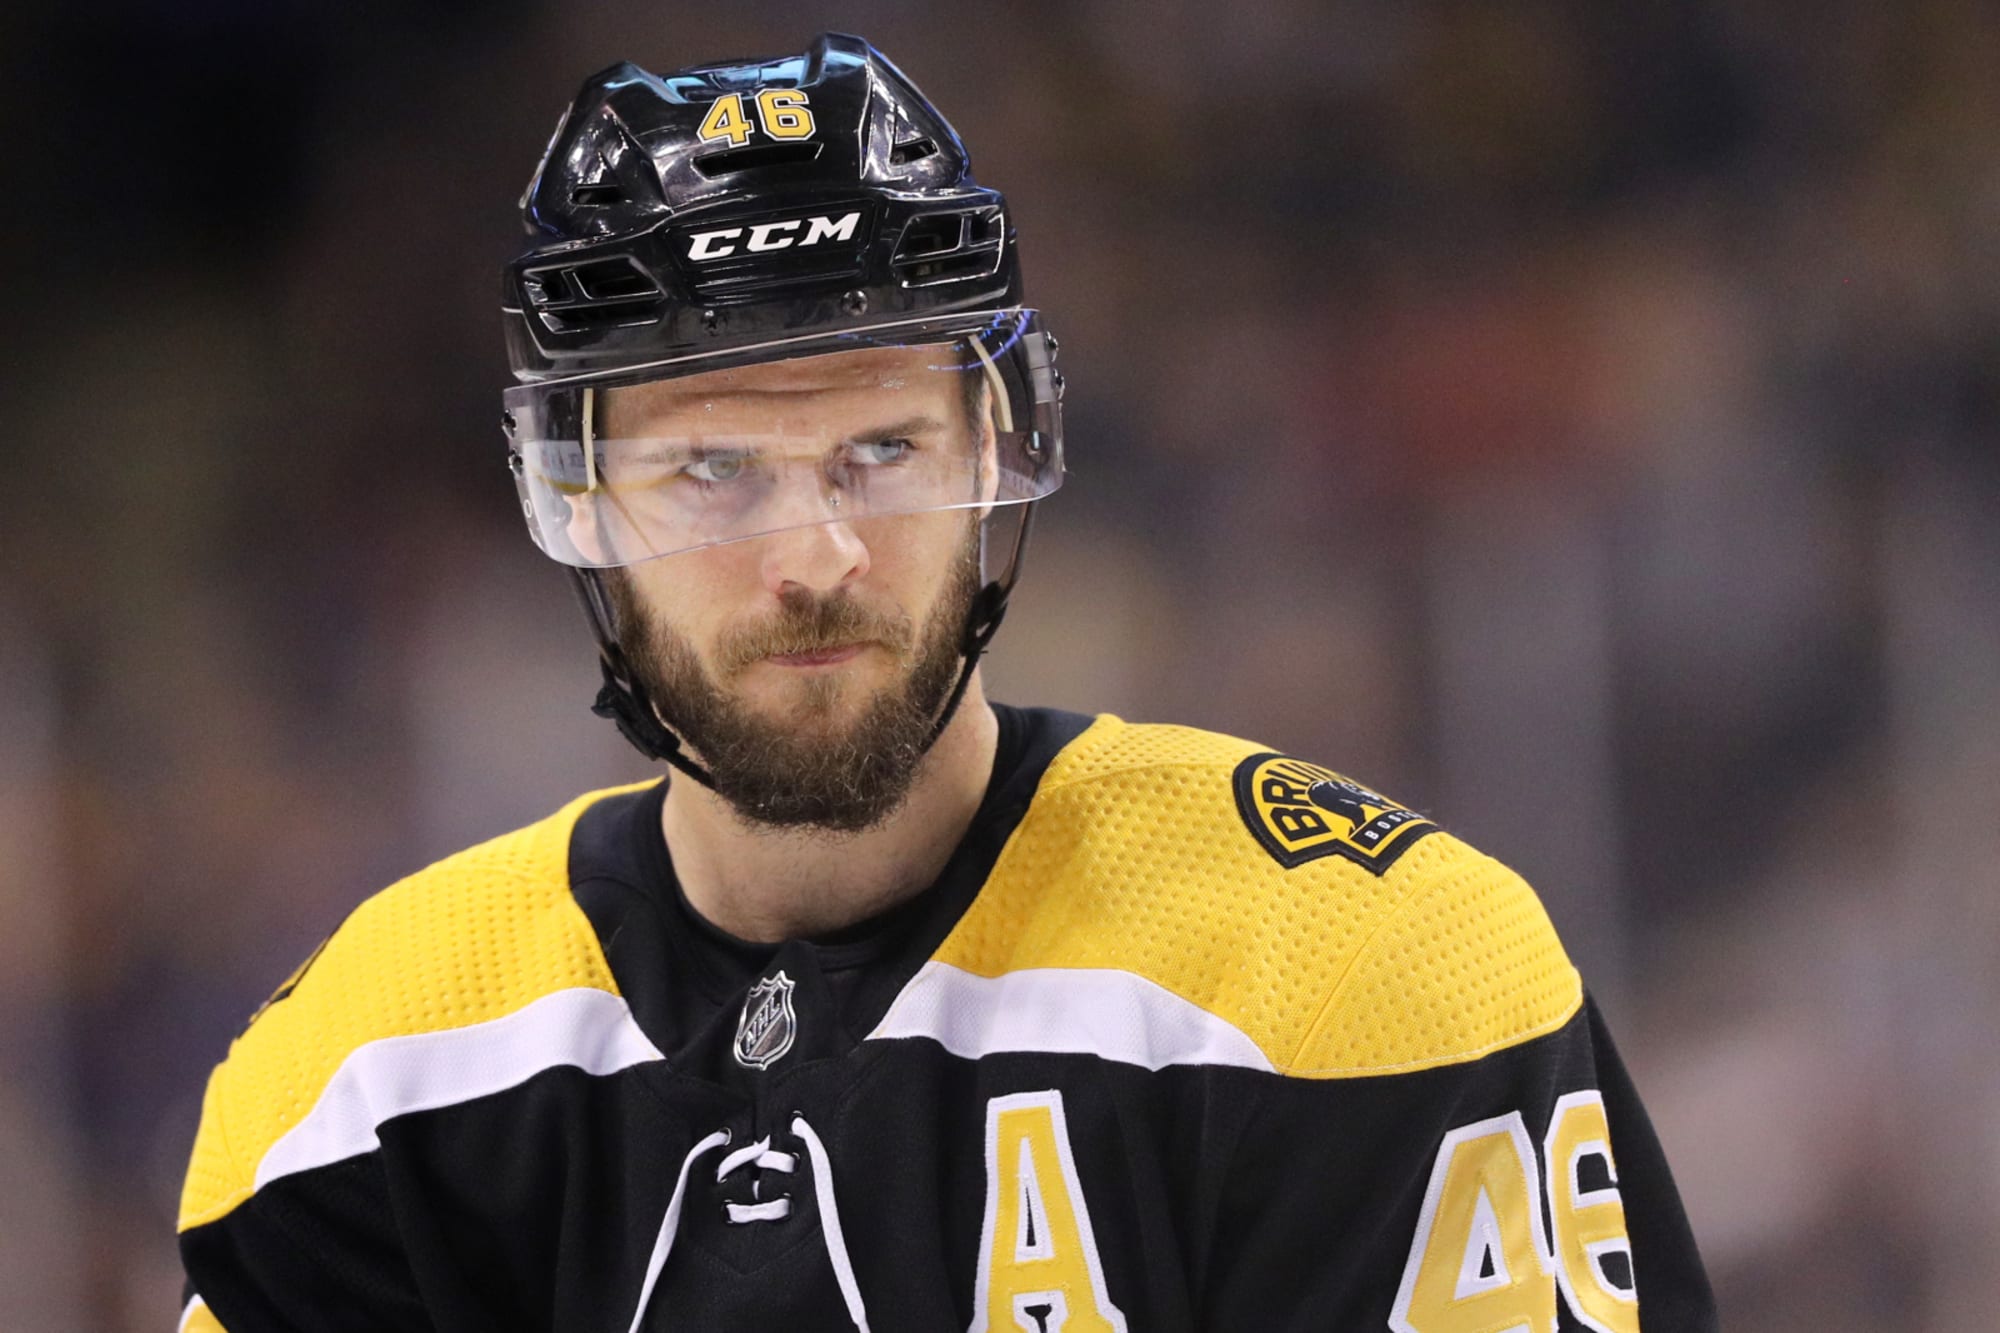 Boston Bruins Star David Krejci Retires After 16 Stellar NHL Seasons